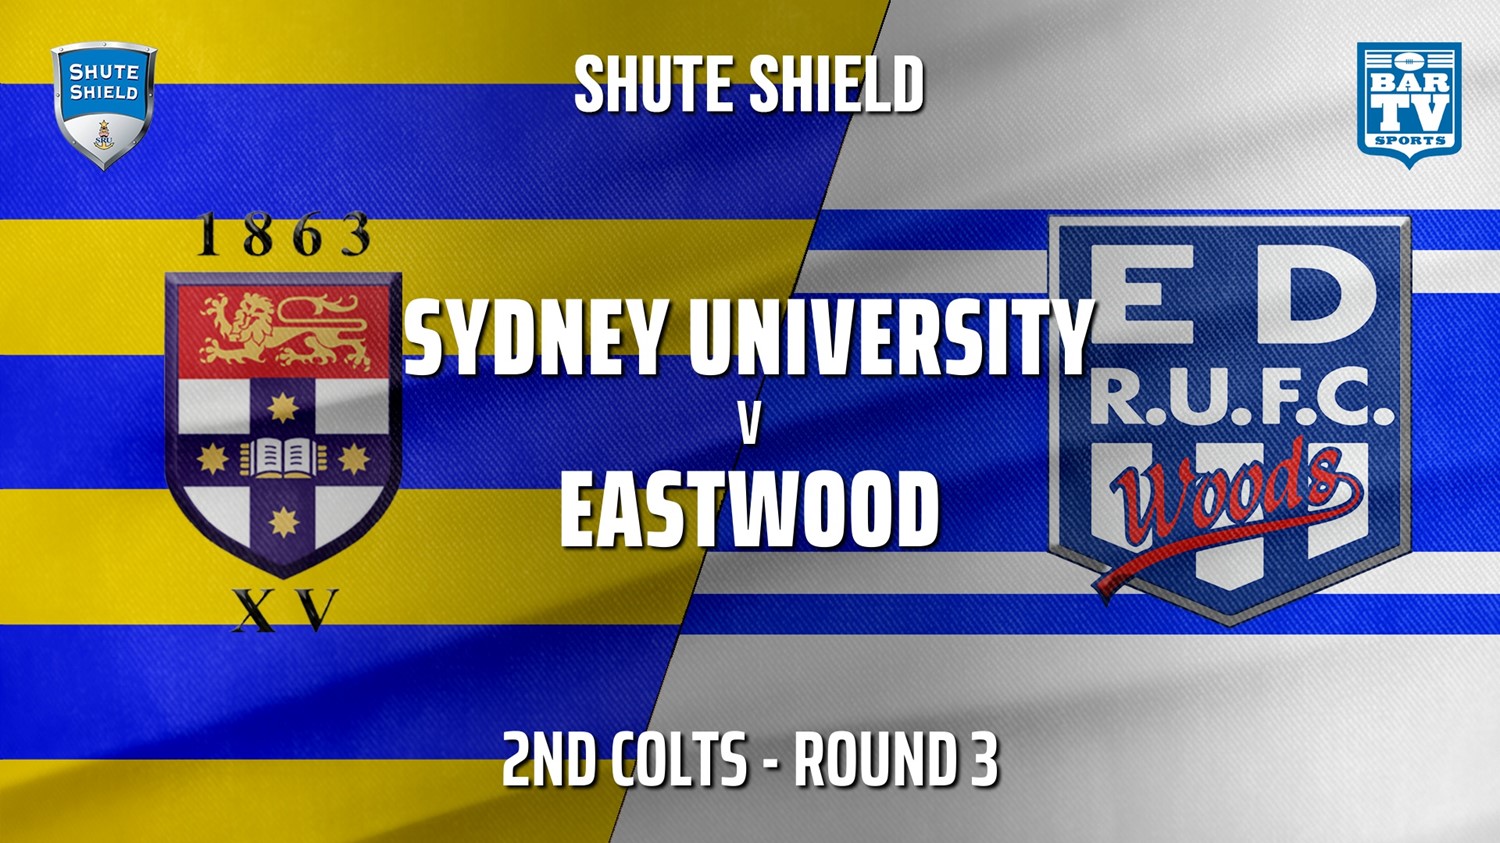 210421-Shute Shield Round 3 - 2nd Colts - Sydney University v Eastwood Minigame Slate Image